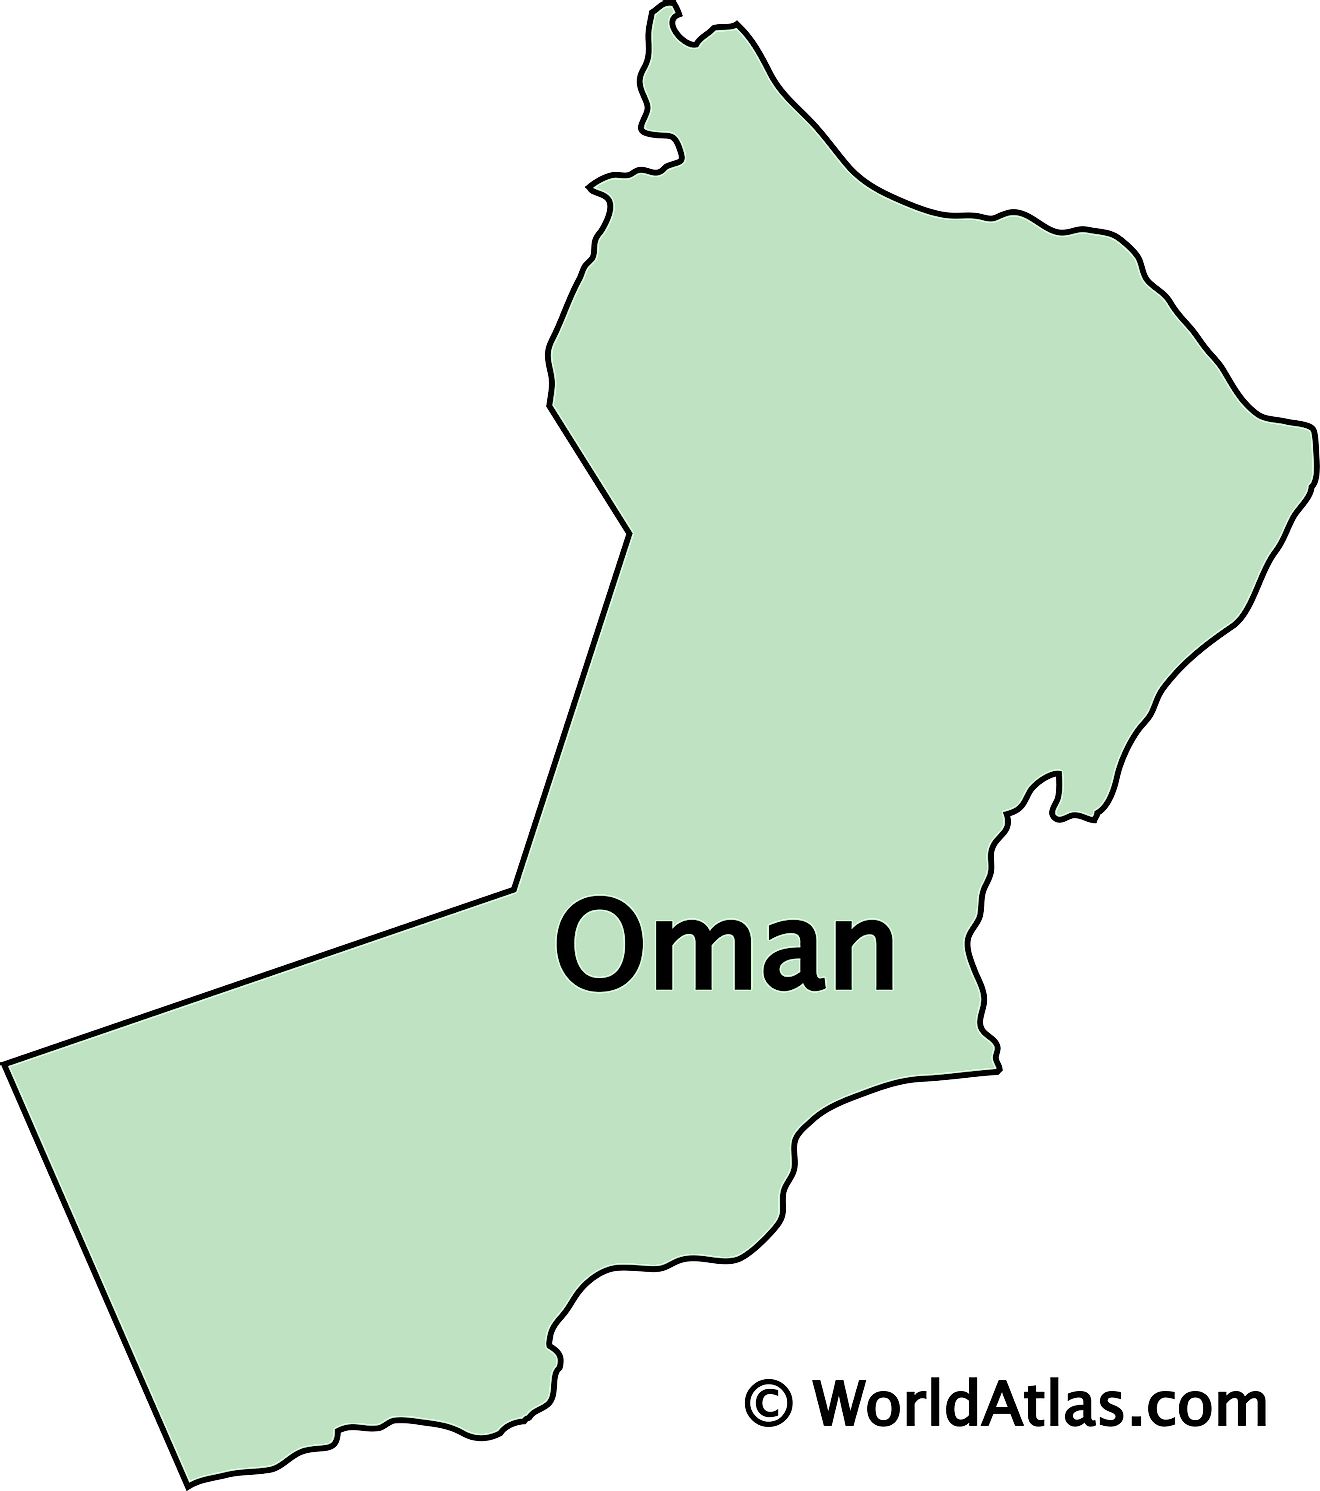 Mapa de contorno de Omán